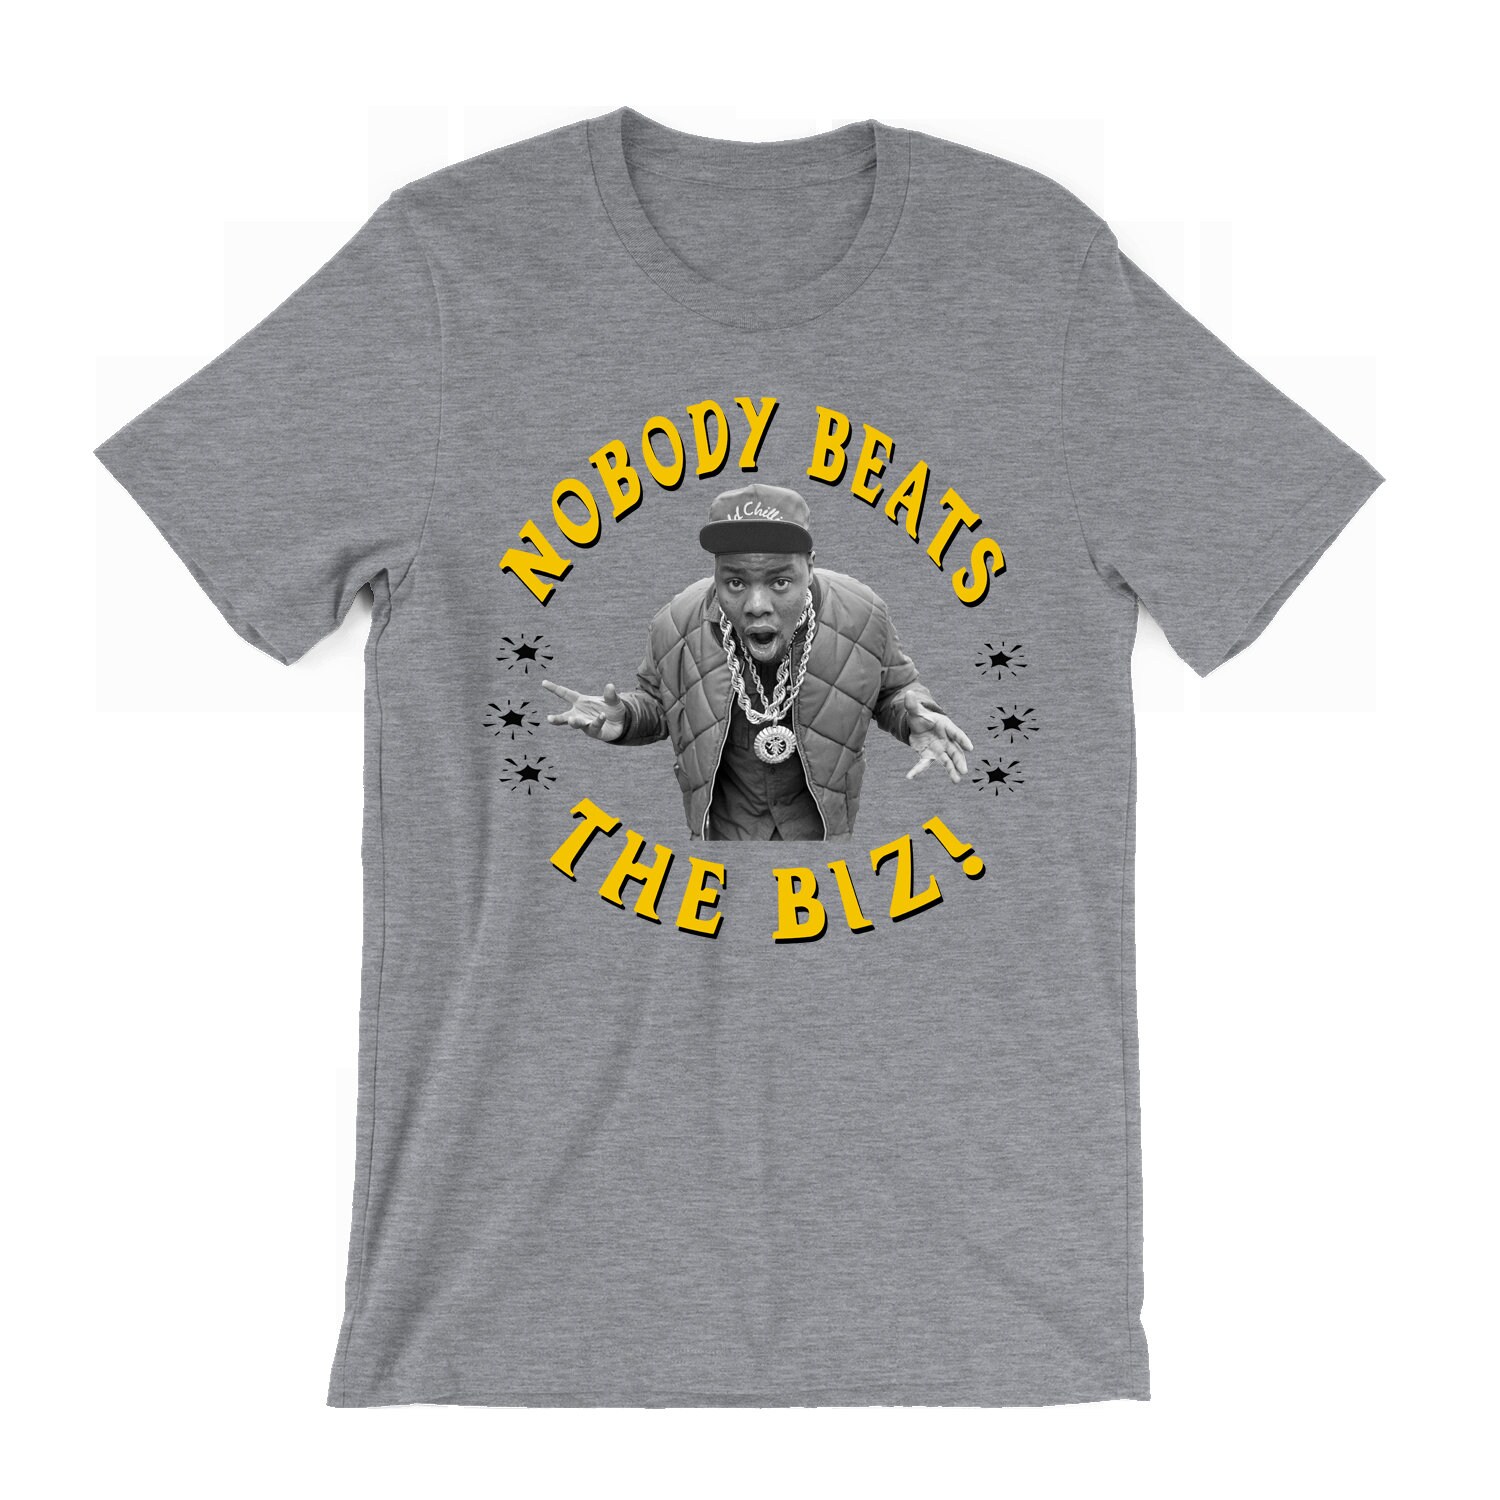 Biz Markie T-shirt Nobody Beats the Biz Cold Chillin' Just A Friend 90s Hip  Hop Rap Golden Era Music T Shirt -  Denmark